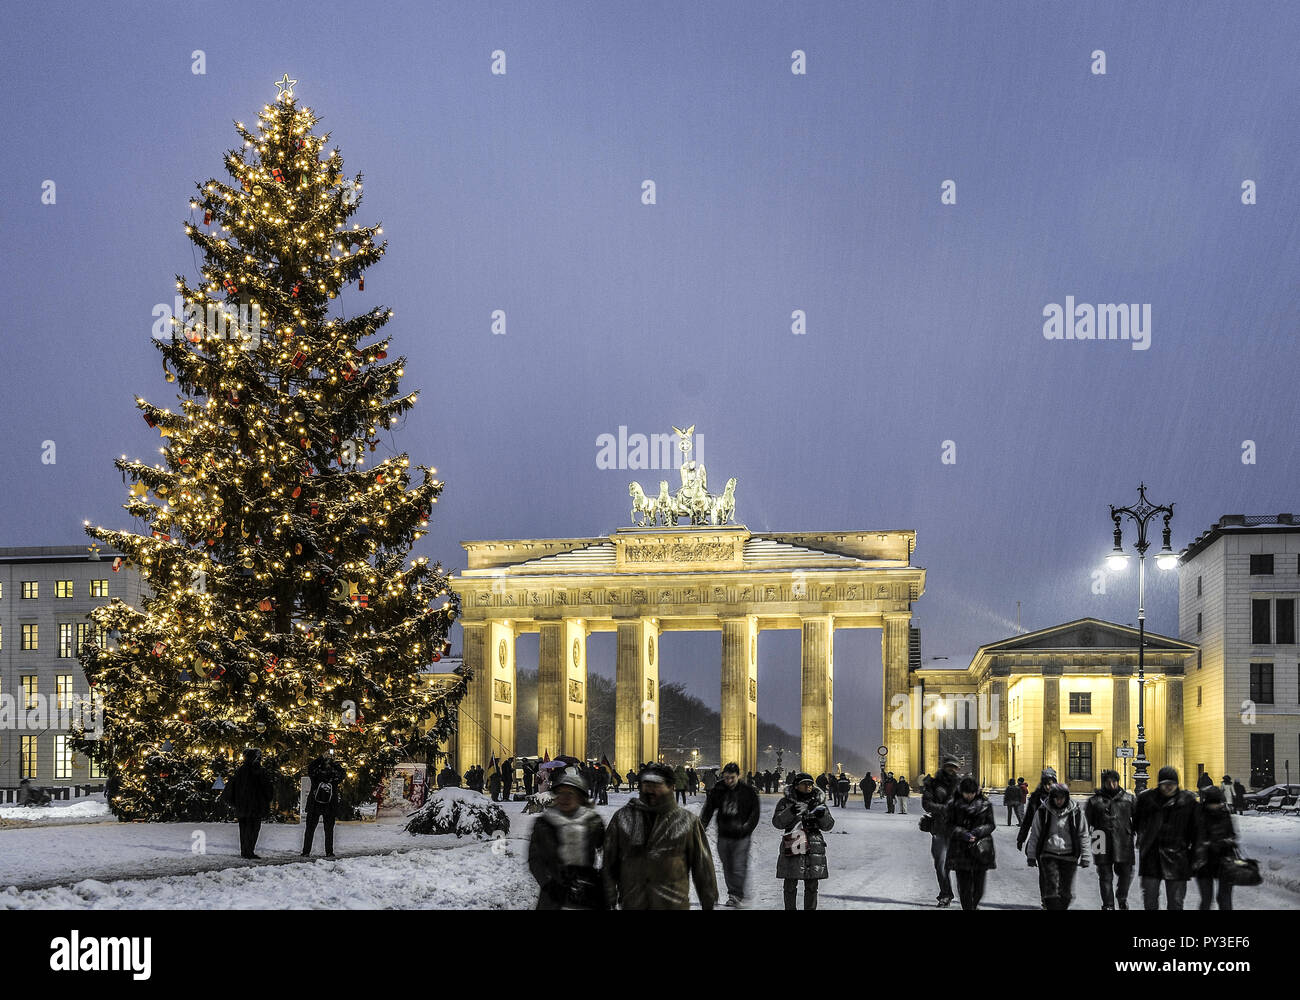 Weihnachtsbaum, Brandenburger Tor, Berlin, Deutschland Banque D'Images